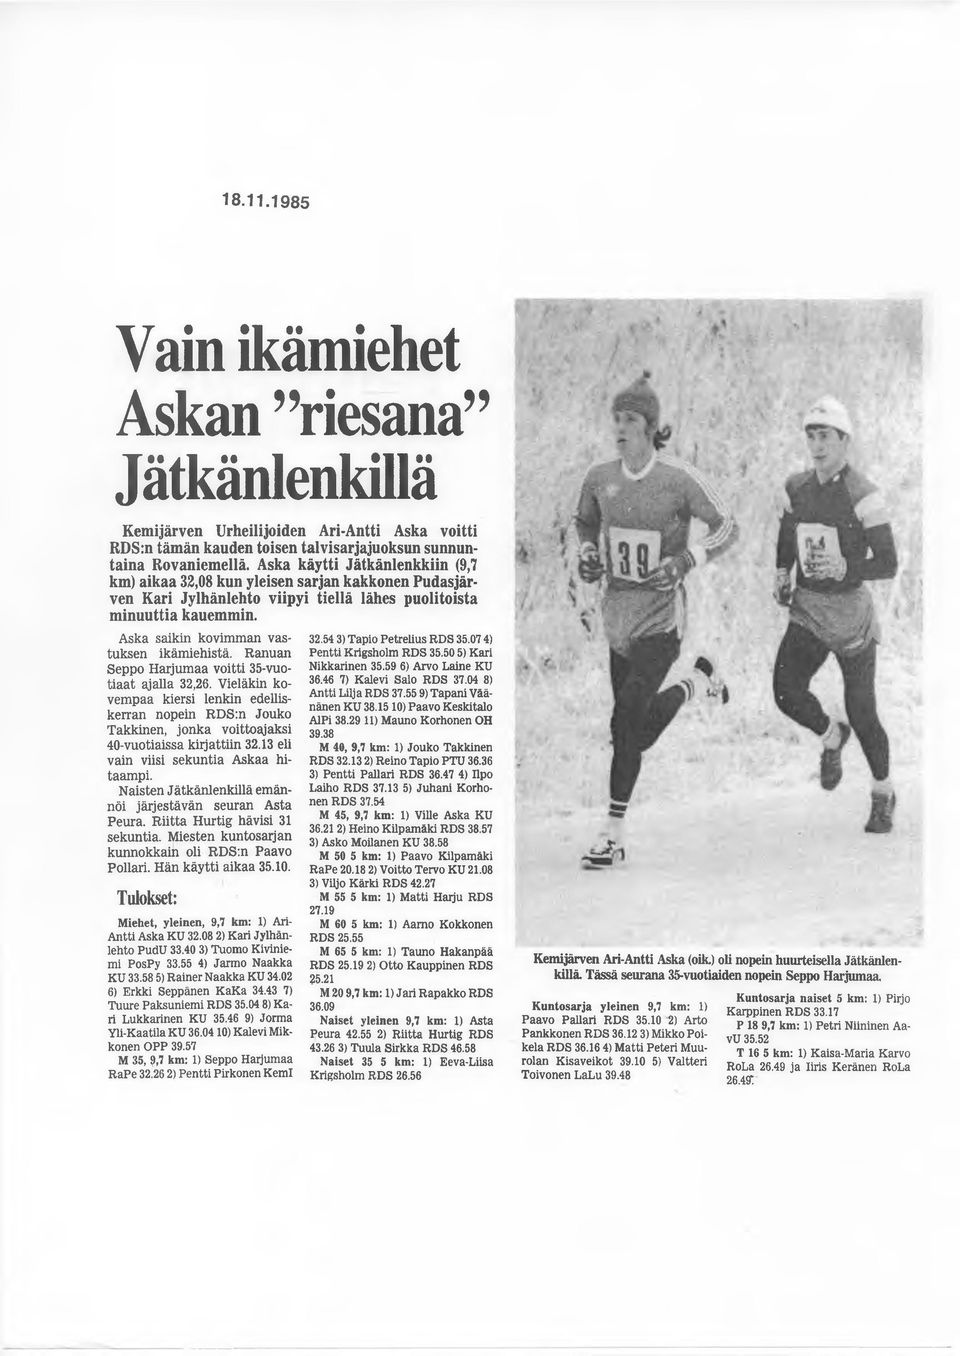 Ranuan Seppo Harjumaa voitti 35-vuotiaat ajalla 32,26. Vieläkin kovempaa kiersi lenkin edelliskerran nopein RDS:n Jouko Takkinen, jonka voittoajaksi 40-vuotiaissa kirjattiin 32.